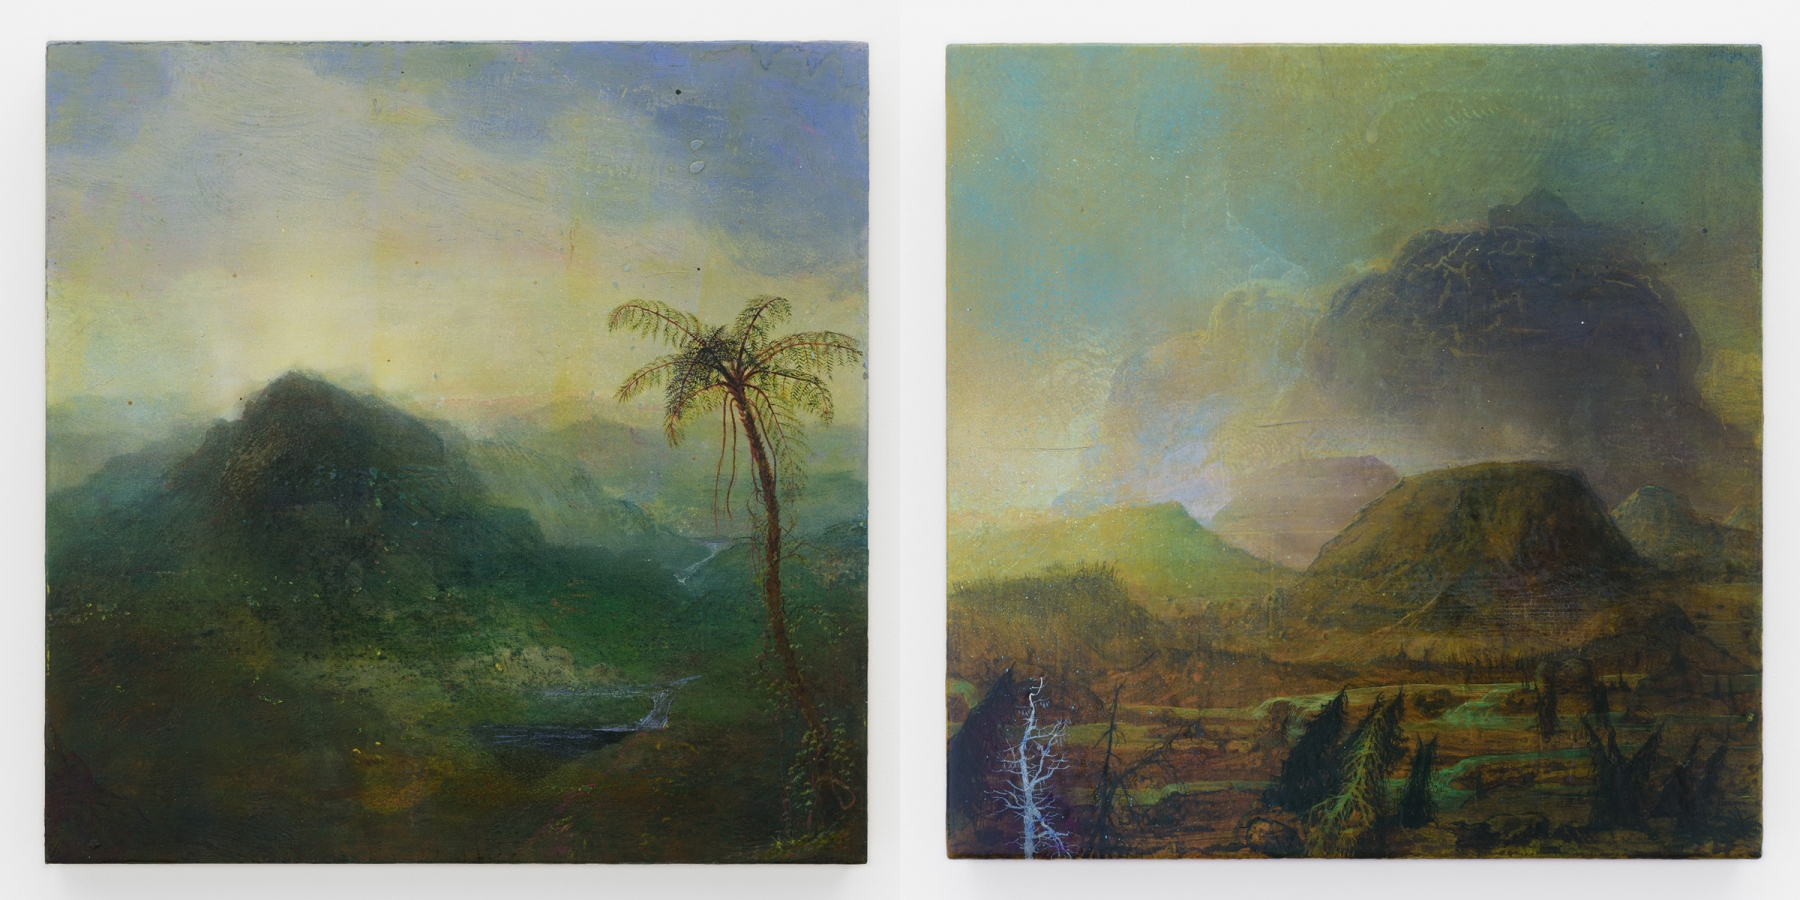 Left:&nbsp;Untitled, 2011 (JN 744)

Right:&nbsp;Untitled, 2011 (JN 749)

Inquire